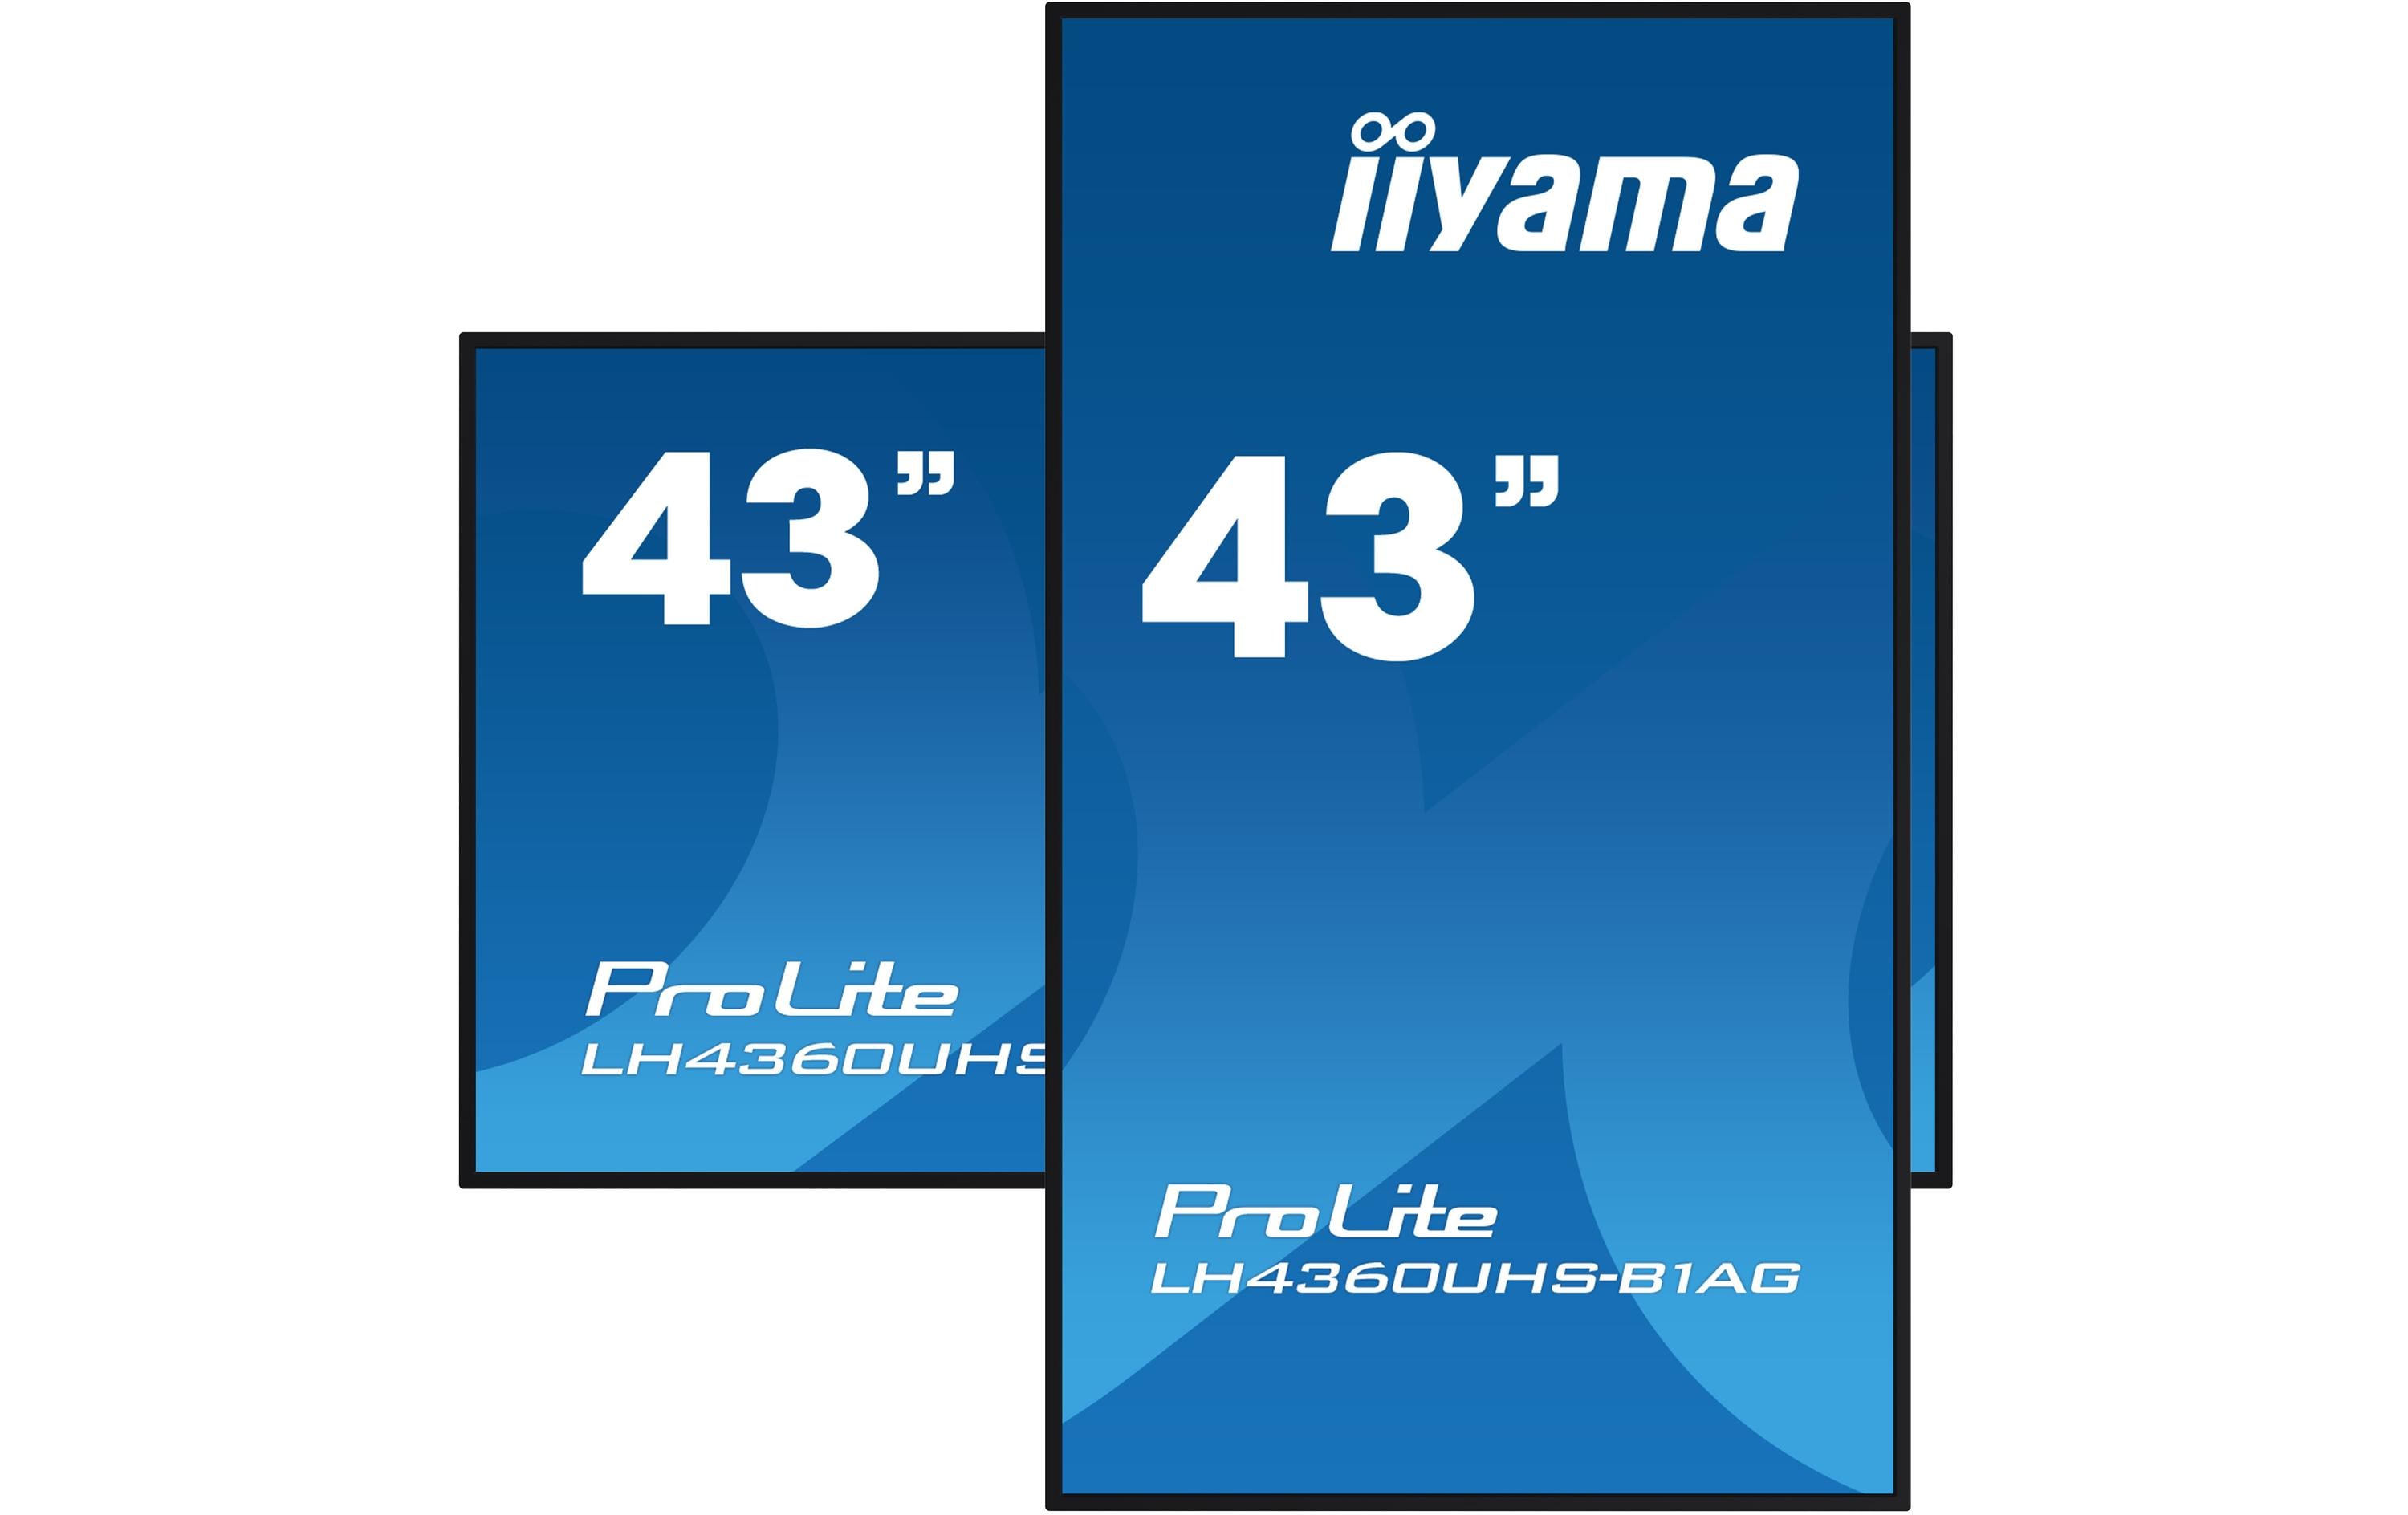 iiyama Monitor ProLite LH4360UHS-B1AG